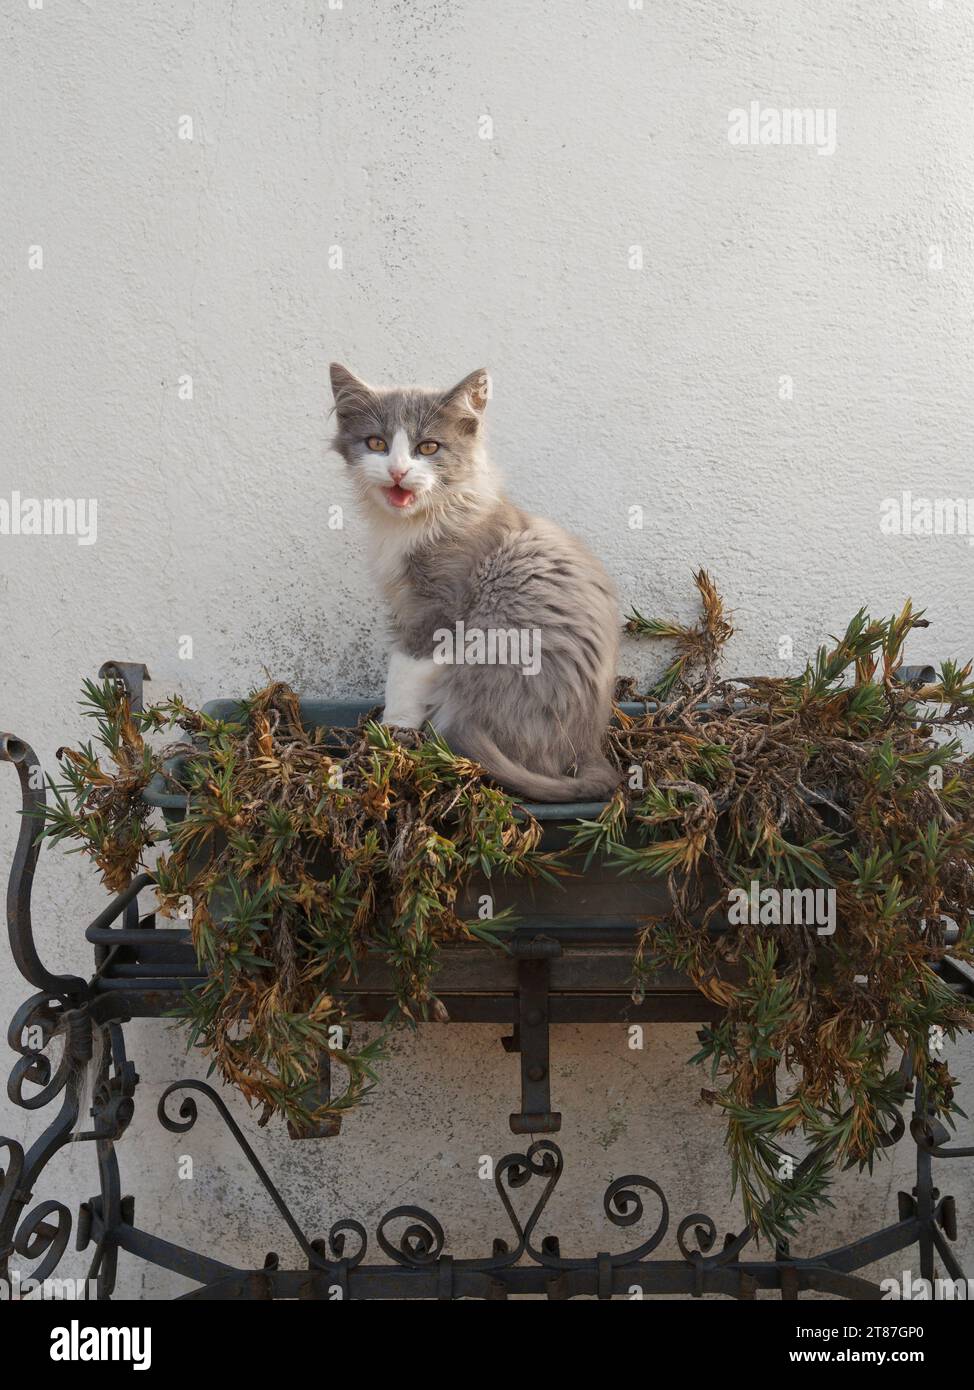 Adorabile gattino soffice grigio e bianco si trova su una piantatrice con piante appassite che sembrano mezz'erba o un'espressione insolita. Novembre 2023 Foto Stock